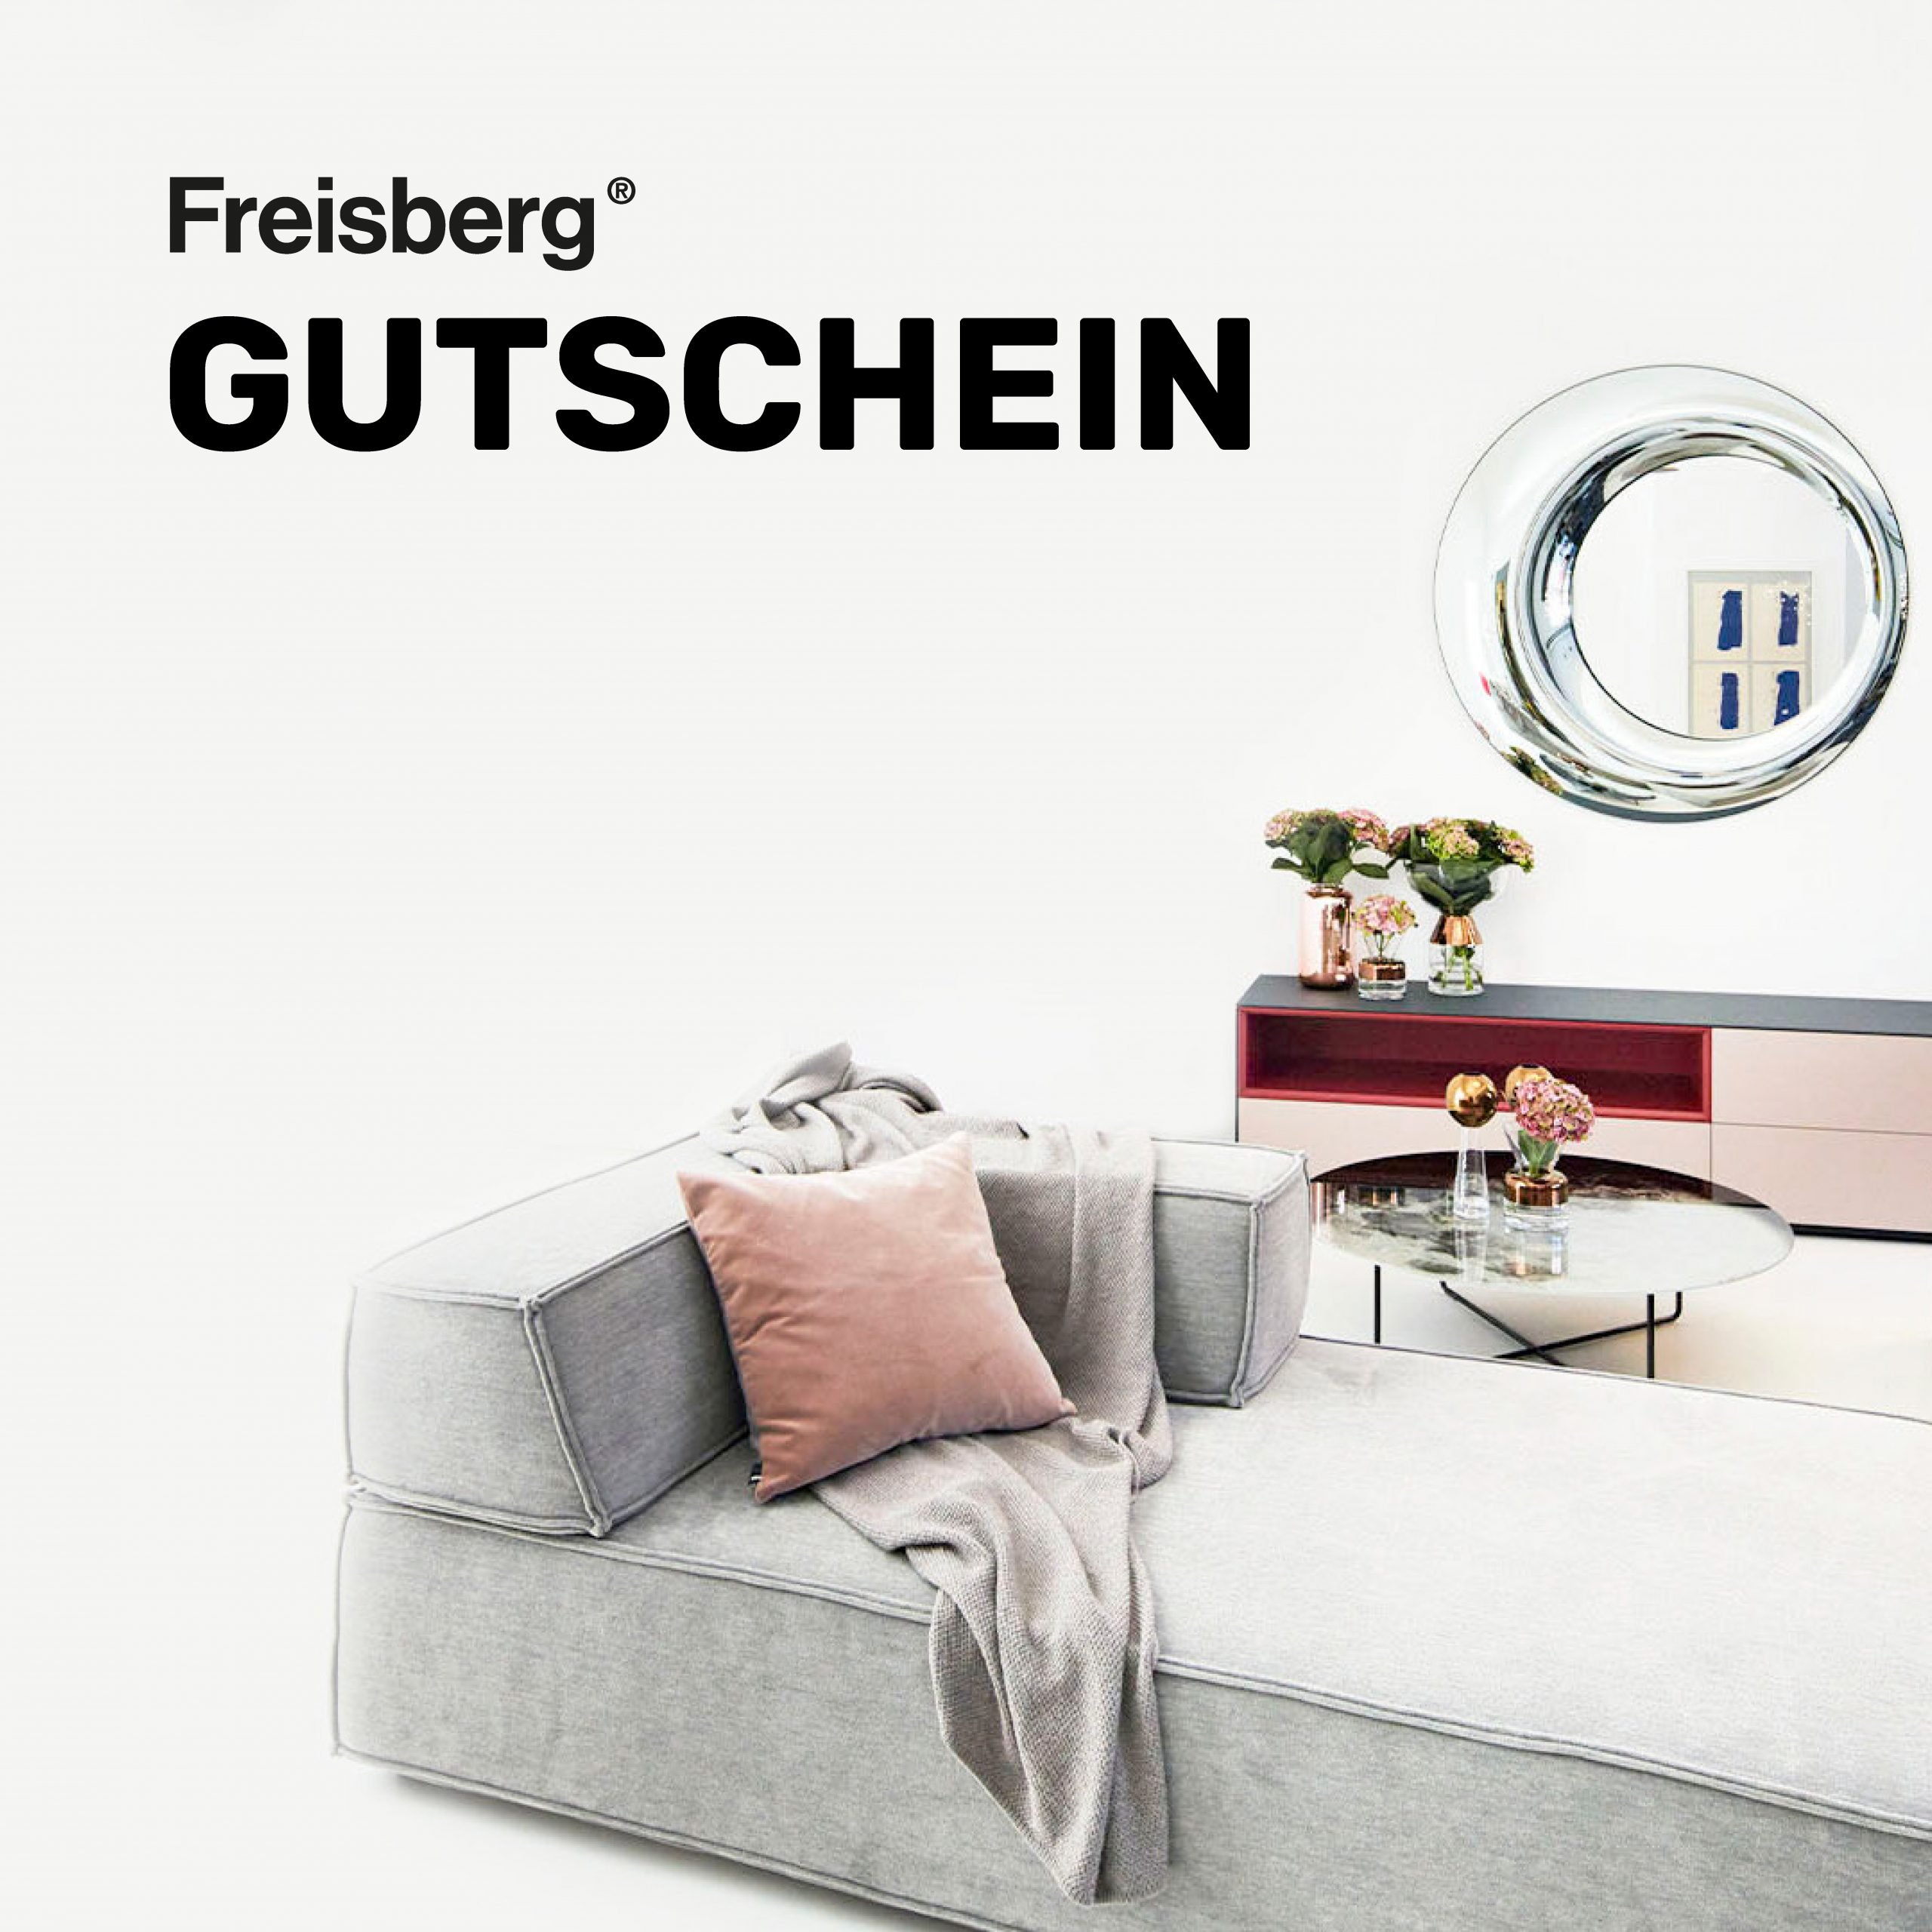 Freisberg Gutschein 2021